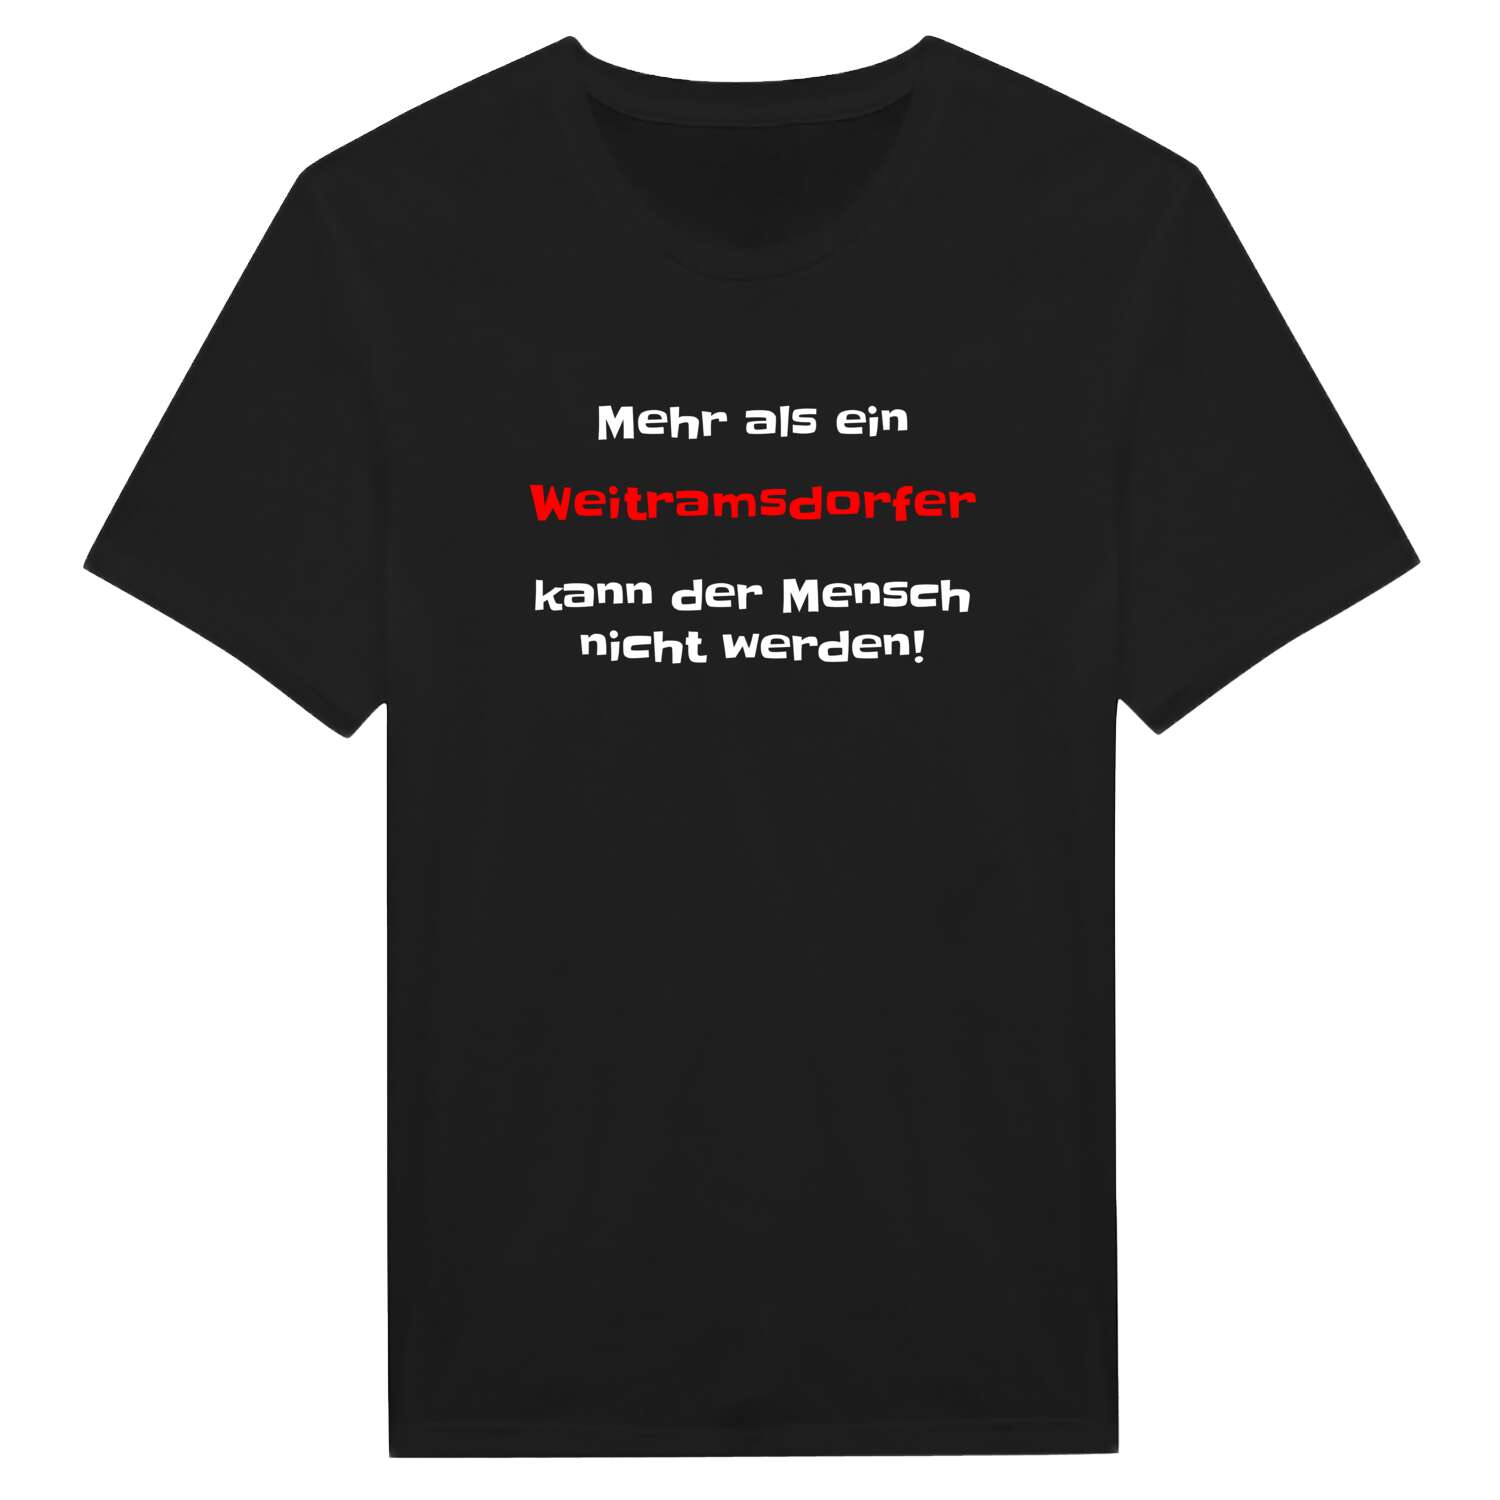 Weitramsdorf T-Shirt »Mehr als ein«